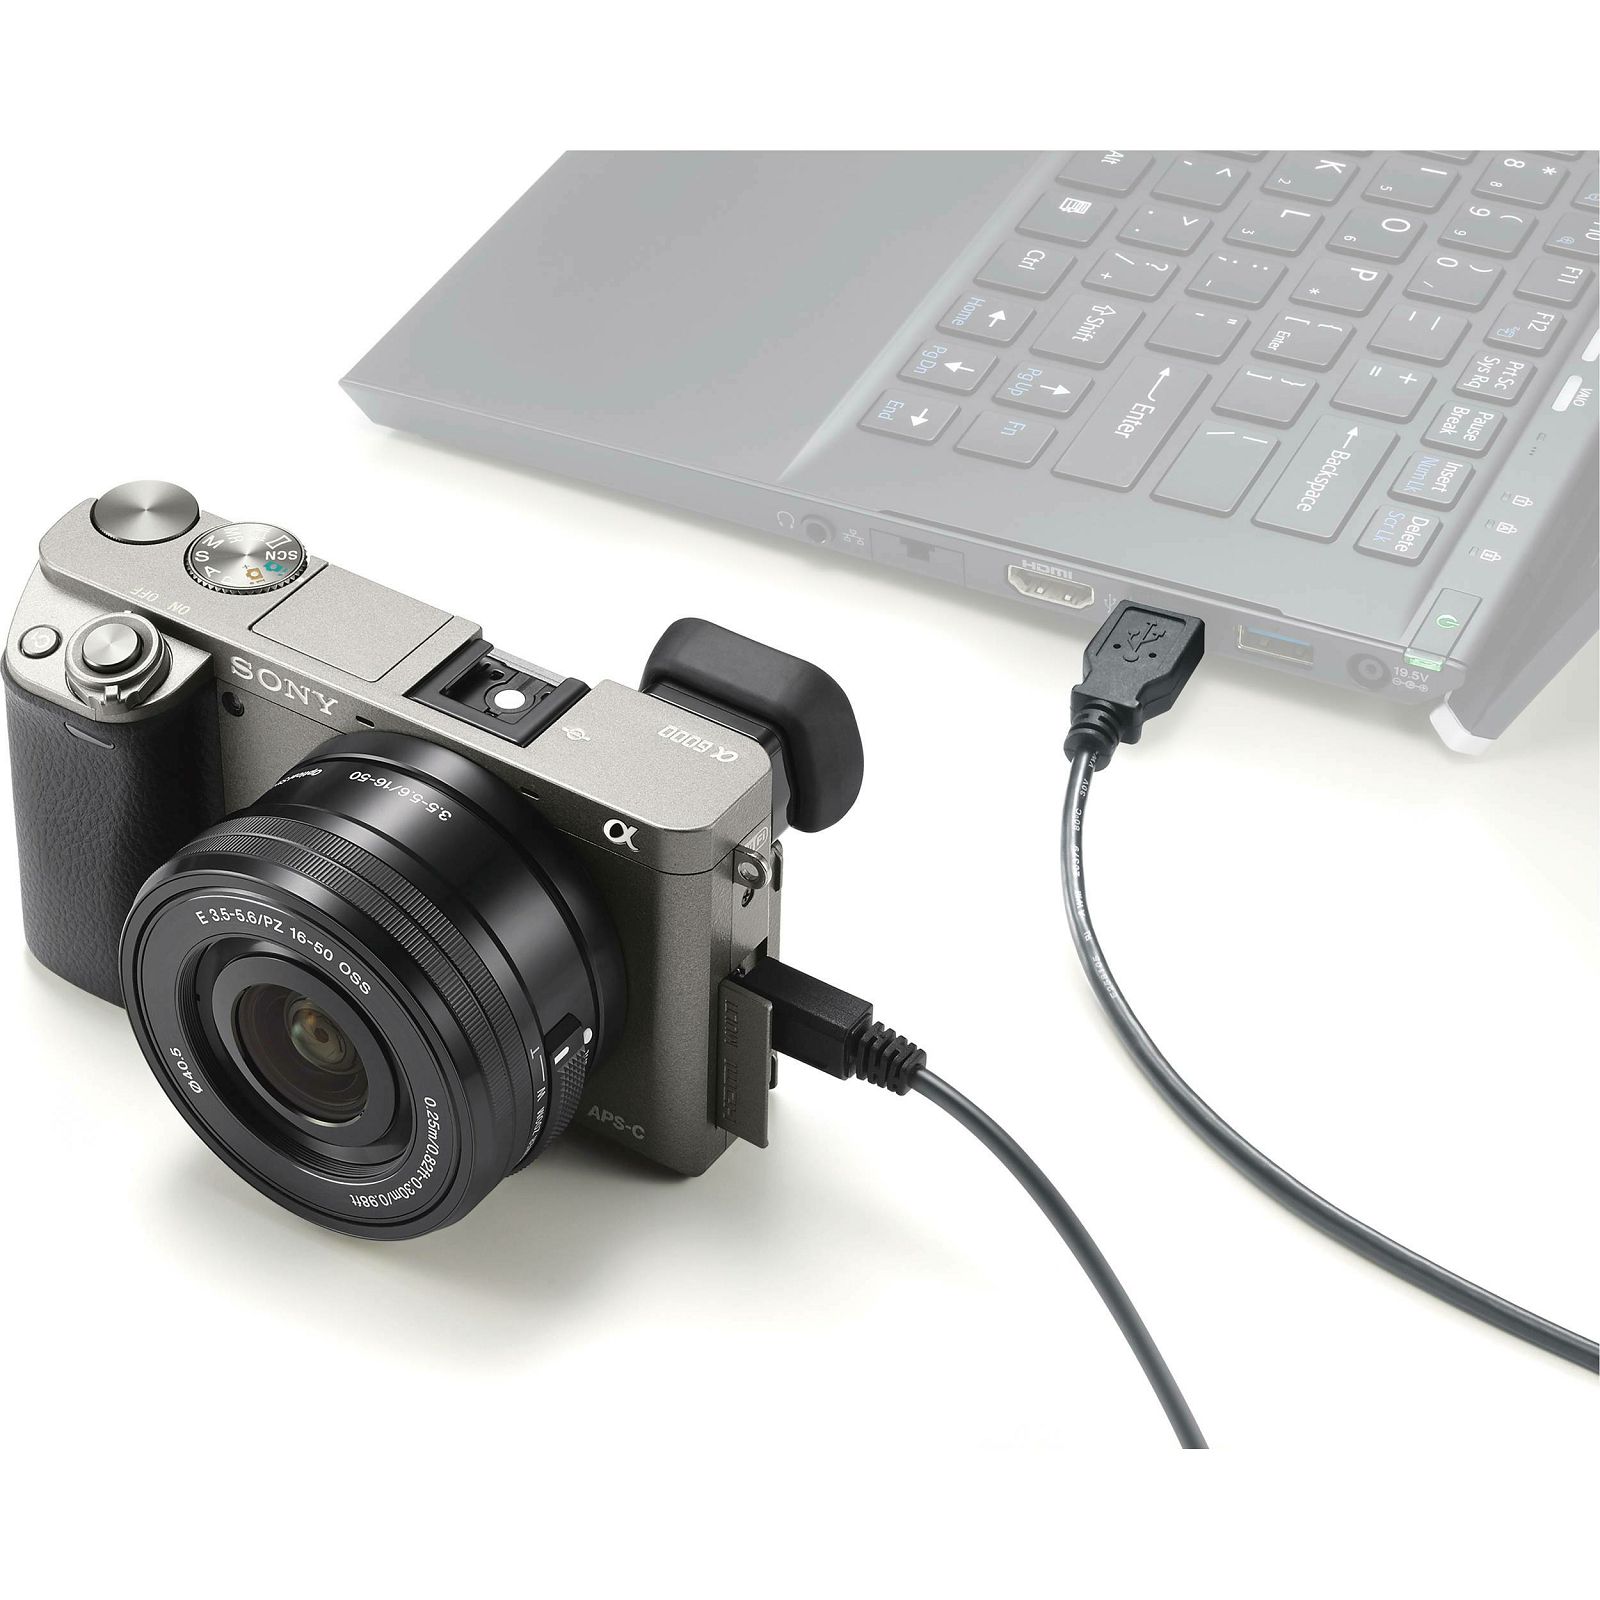 Sony Alpha a6000 + 16-50 f/3.5-5.6 KIT Graphite Mirrorless Digital Camera sivi bezrcalni digitalni fotoaparat i standardni zoom objektiv SEL1650 16-50mm f3.5-5.6 ILCE-6000LH ILCE6000LH (ILCE6000LH.CEC